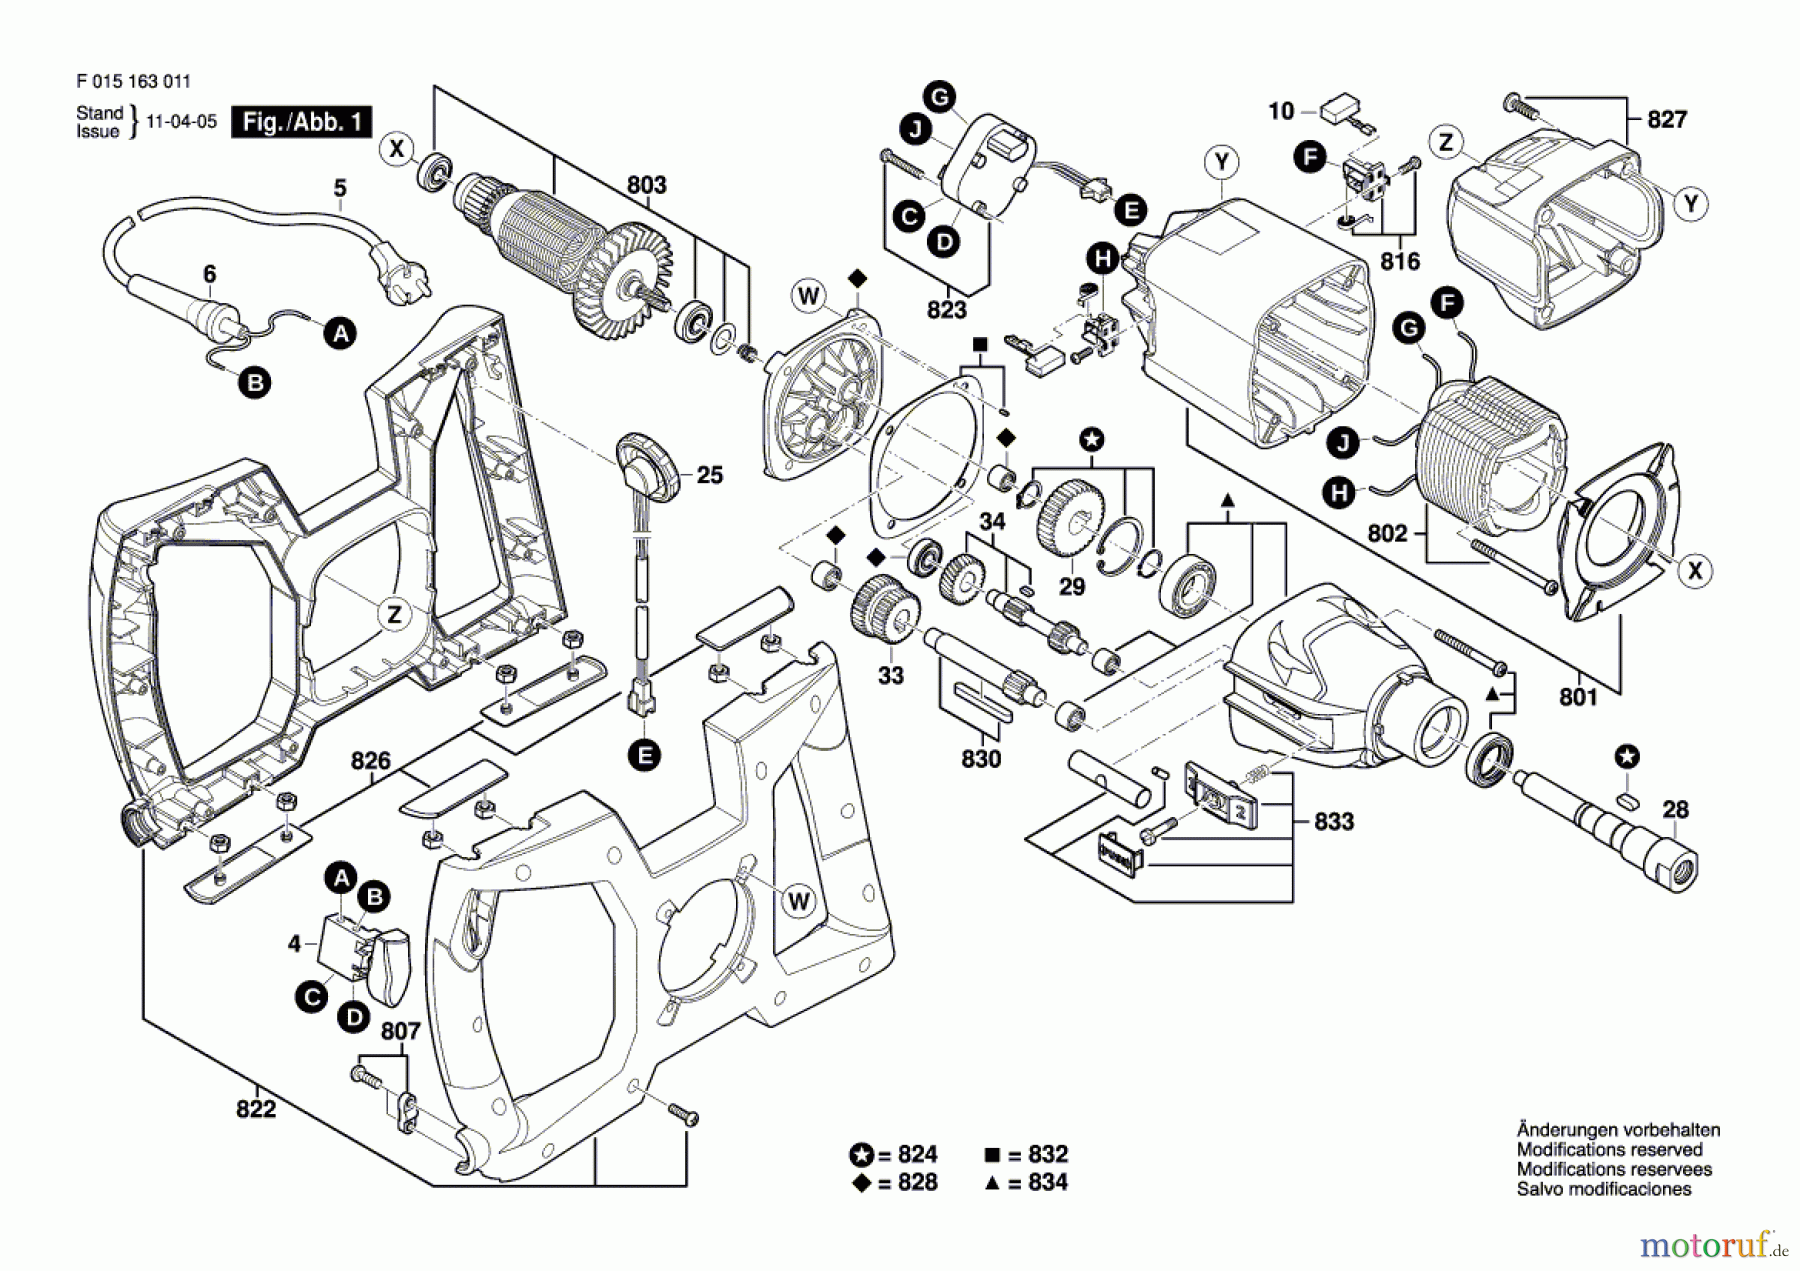  Bosch Werkzeug Rührwerk 1613 Seite 1